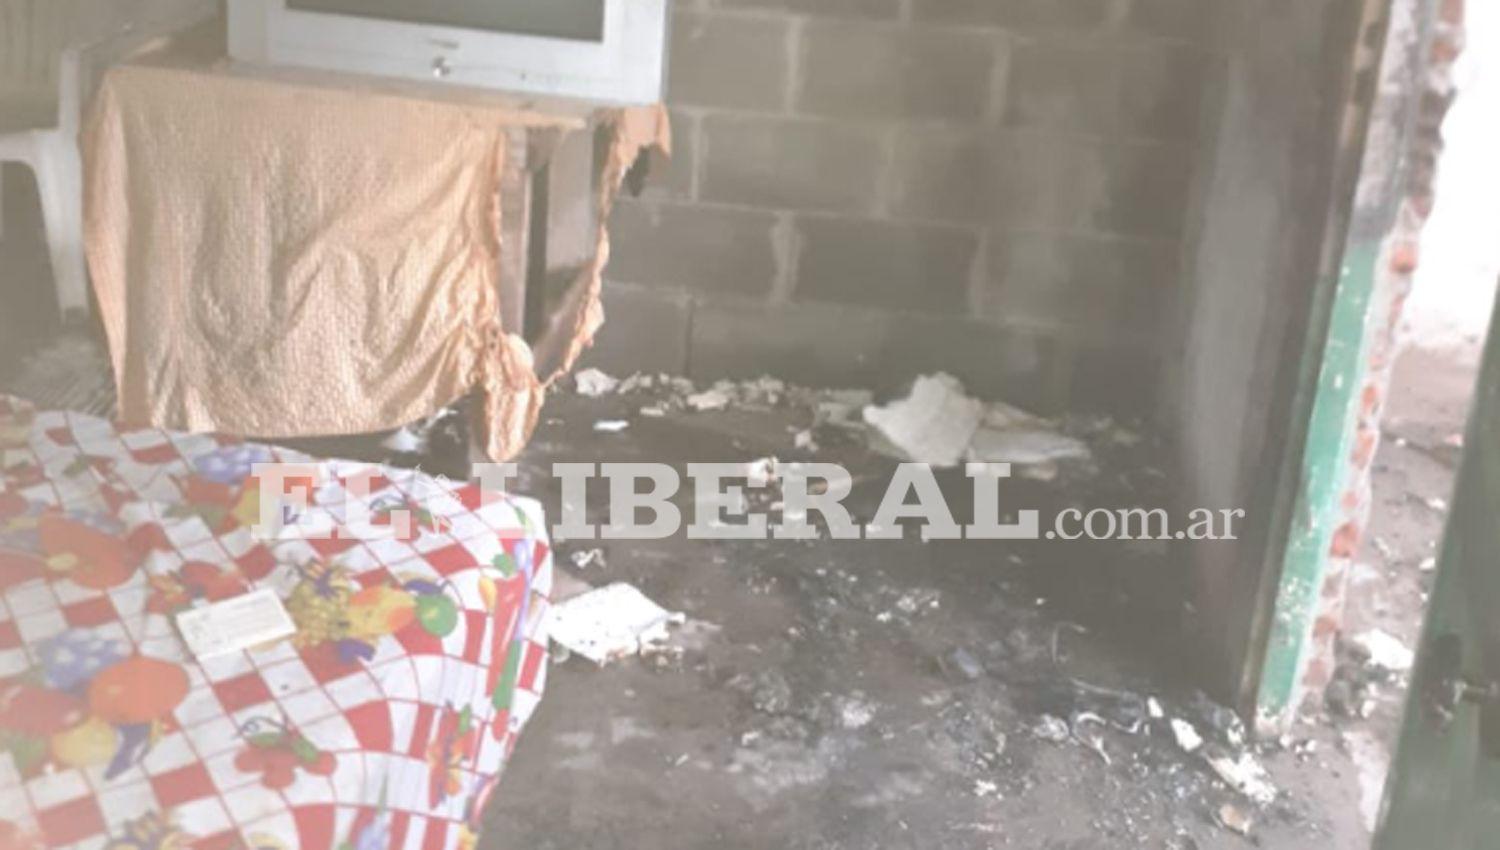 Internaron de urgencia a un teacutecnico en refrigeracioacuten tras explosioacuten en una vivienda